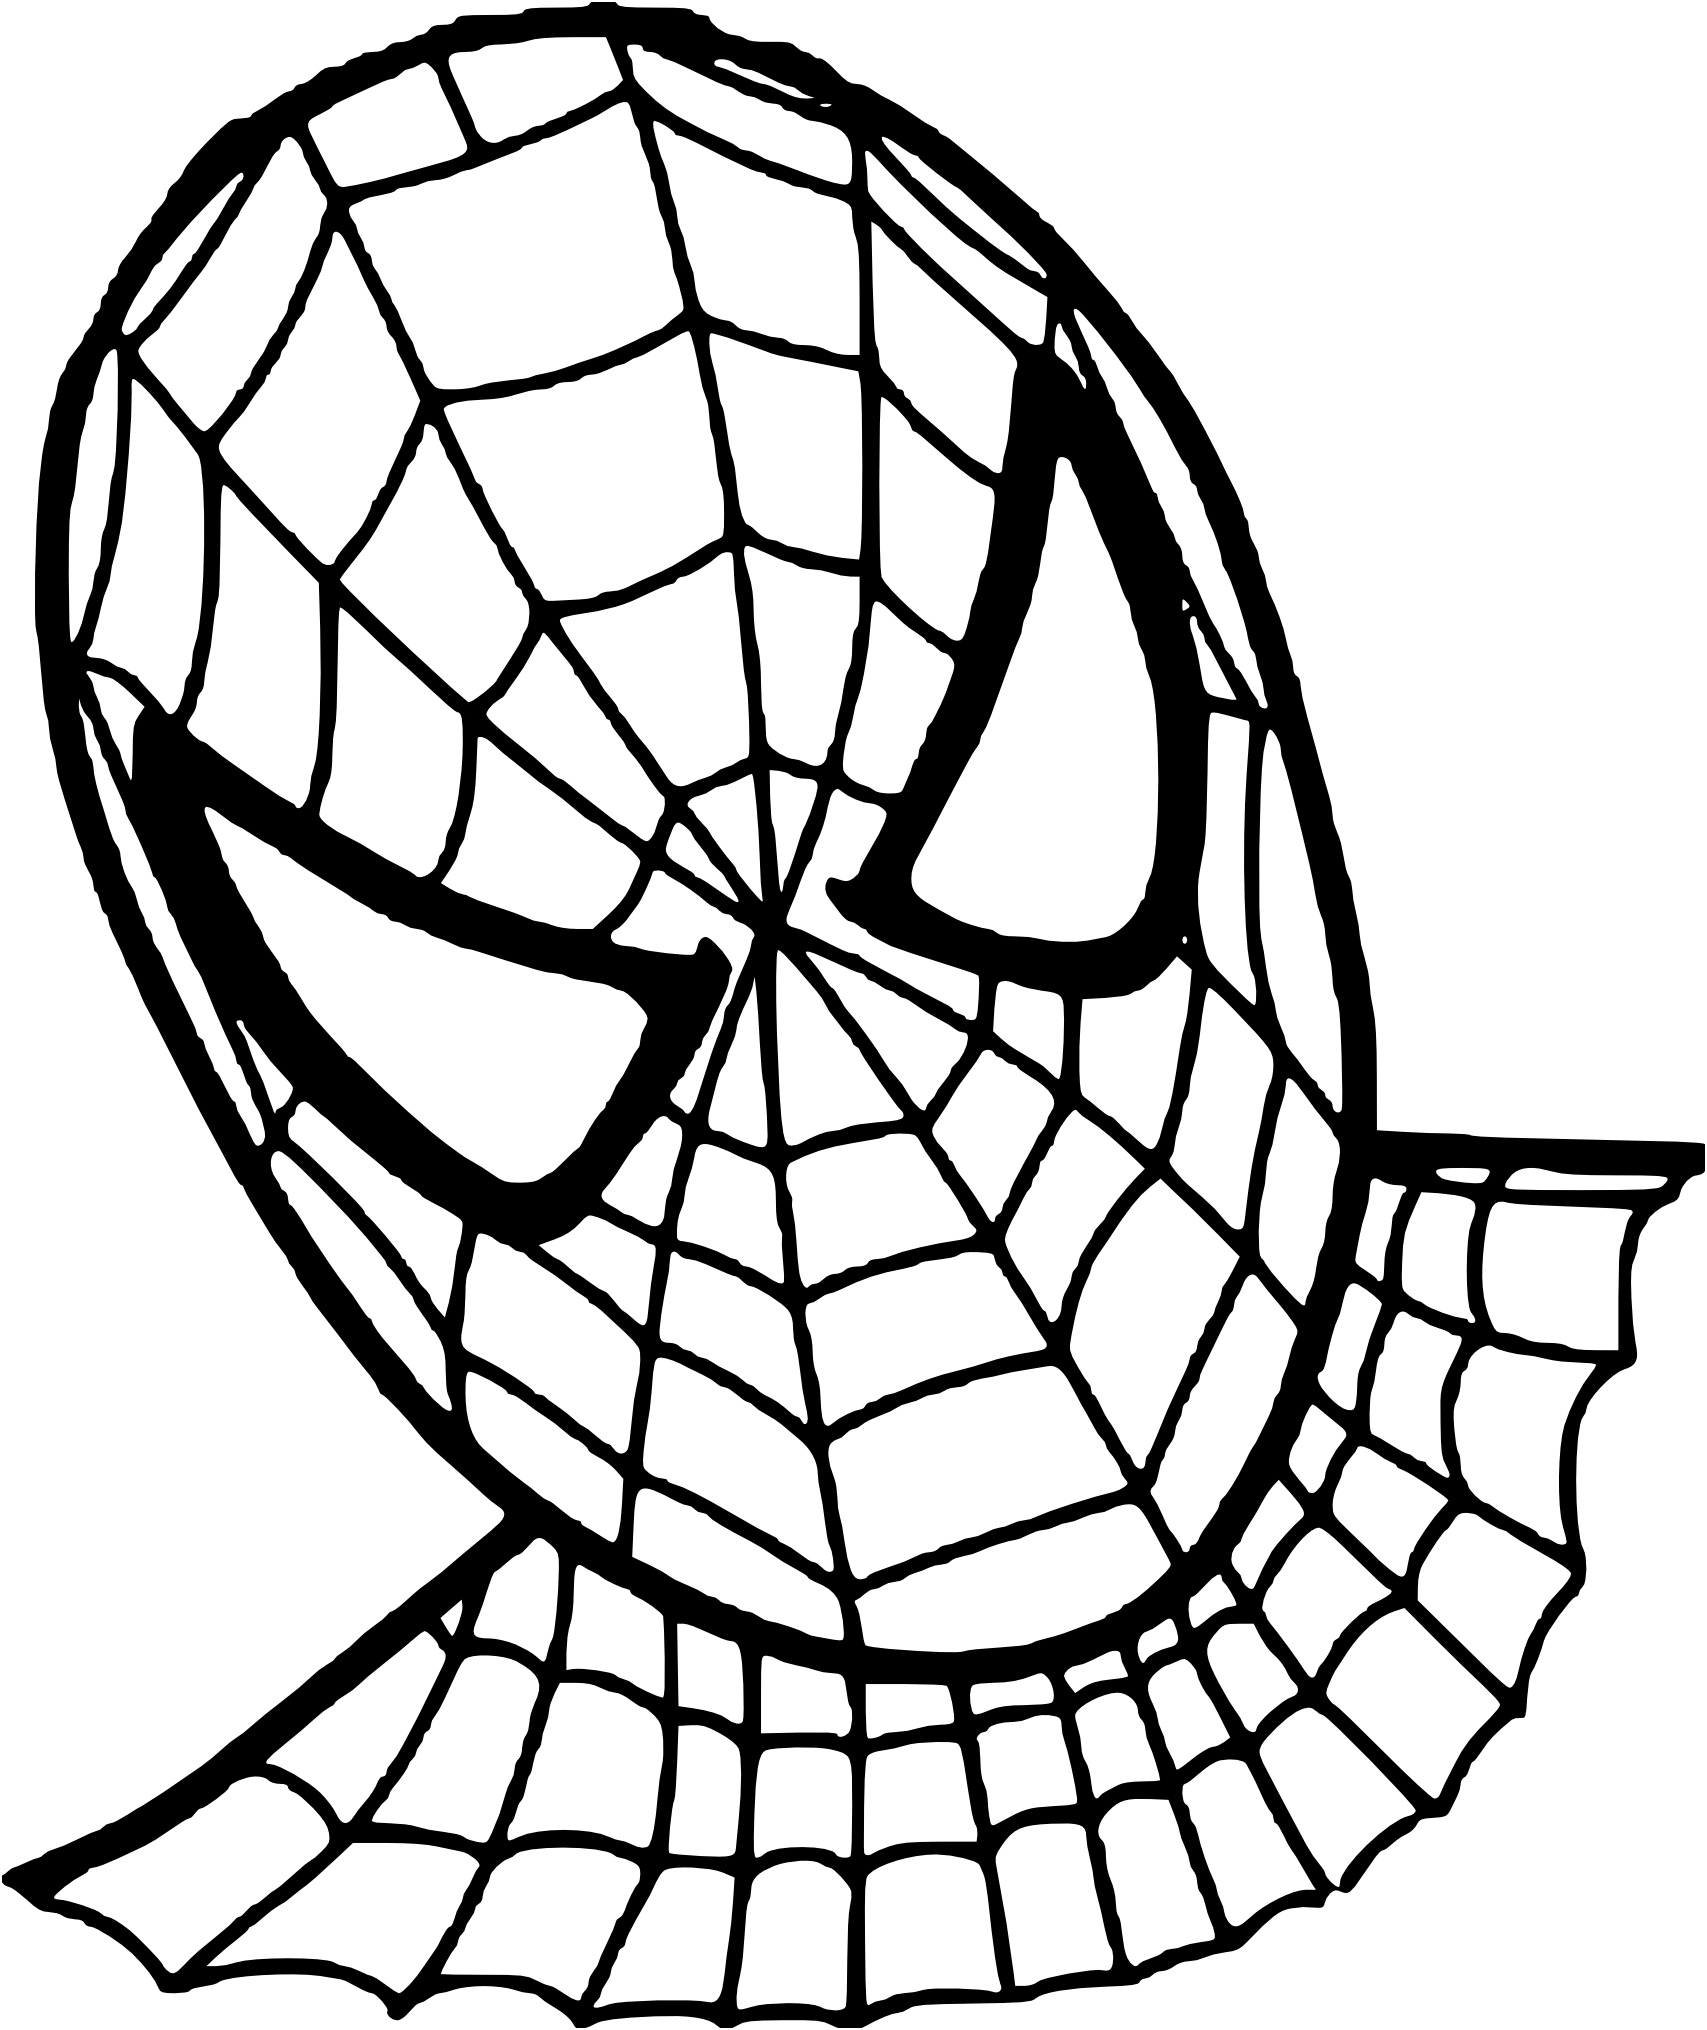 visage spiderman